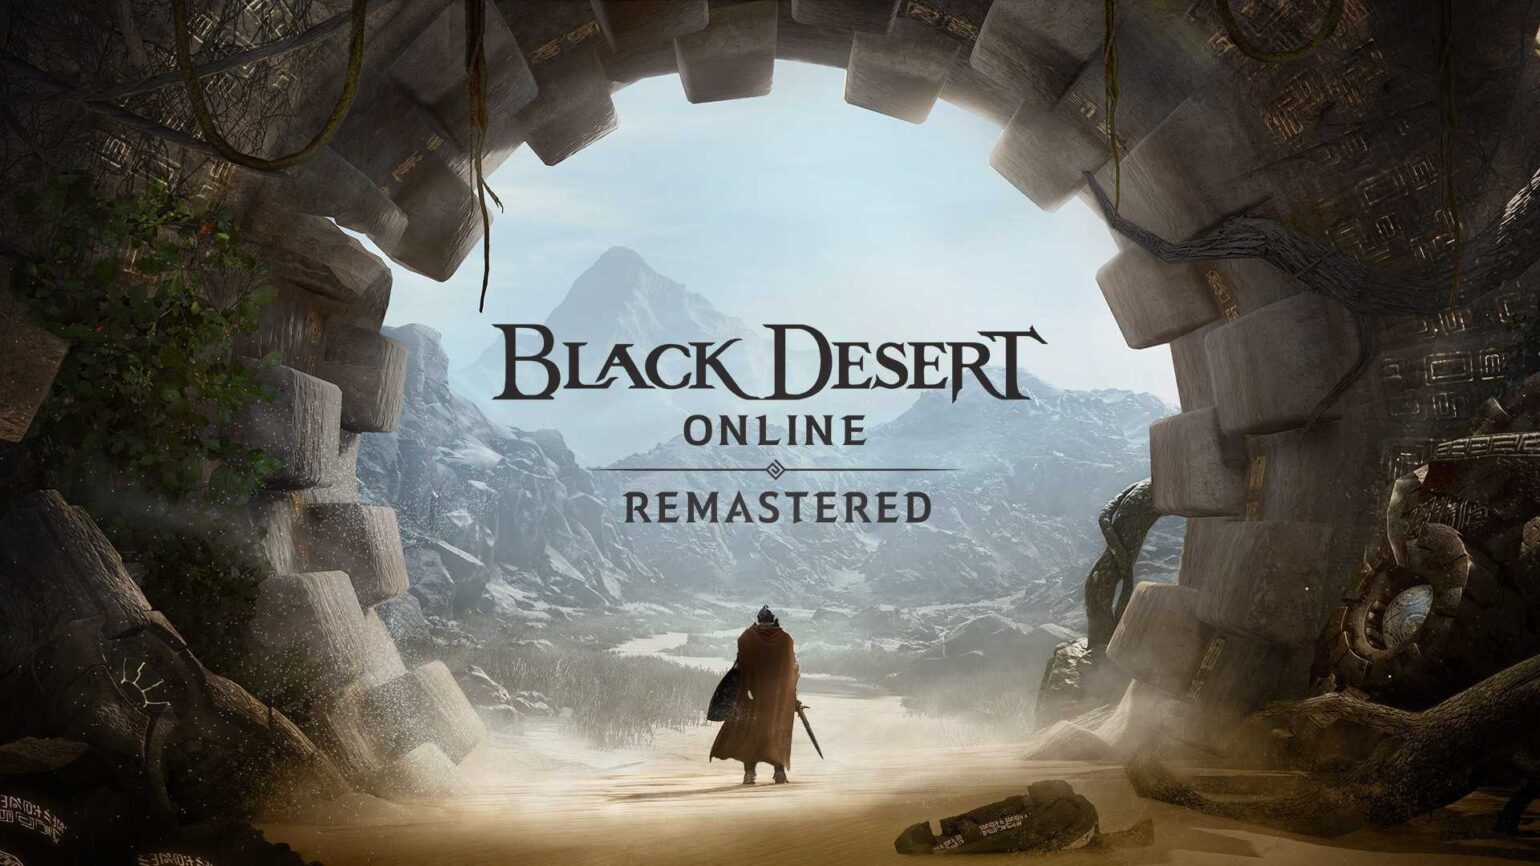 Black Desert Online est disponible gratuitement pour une durée limitée